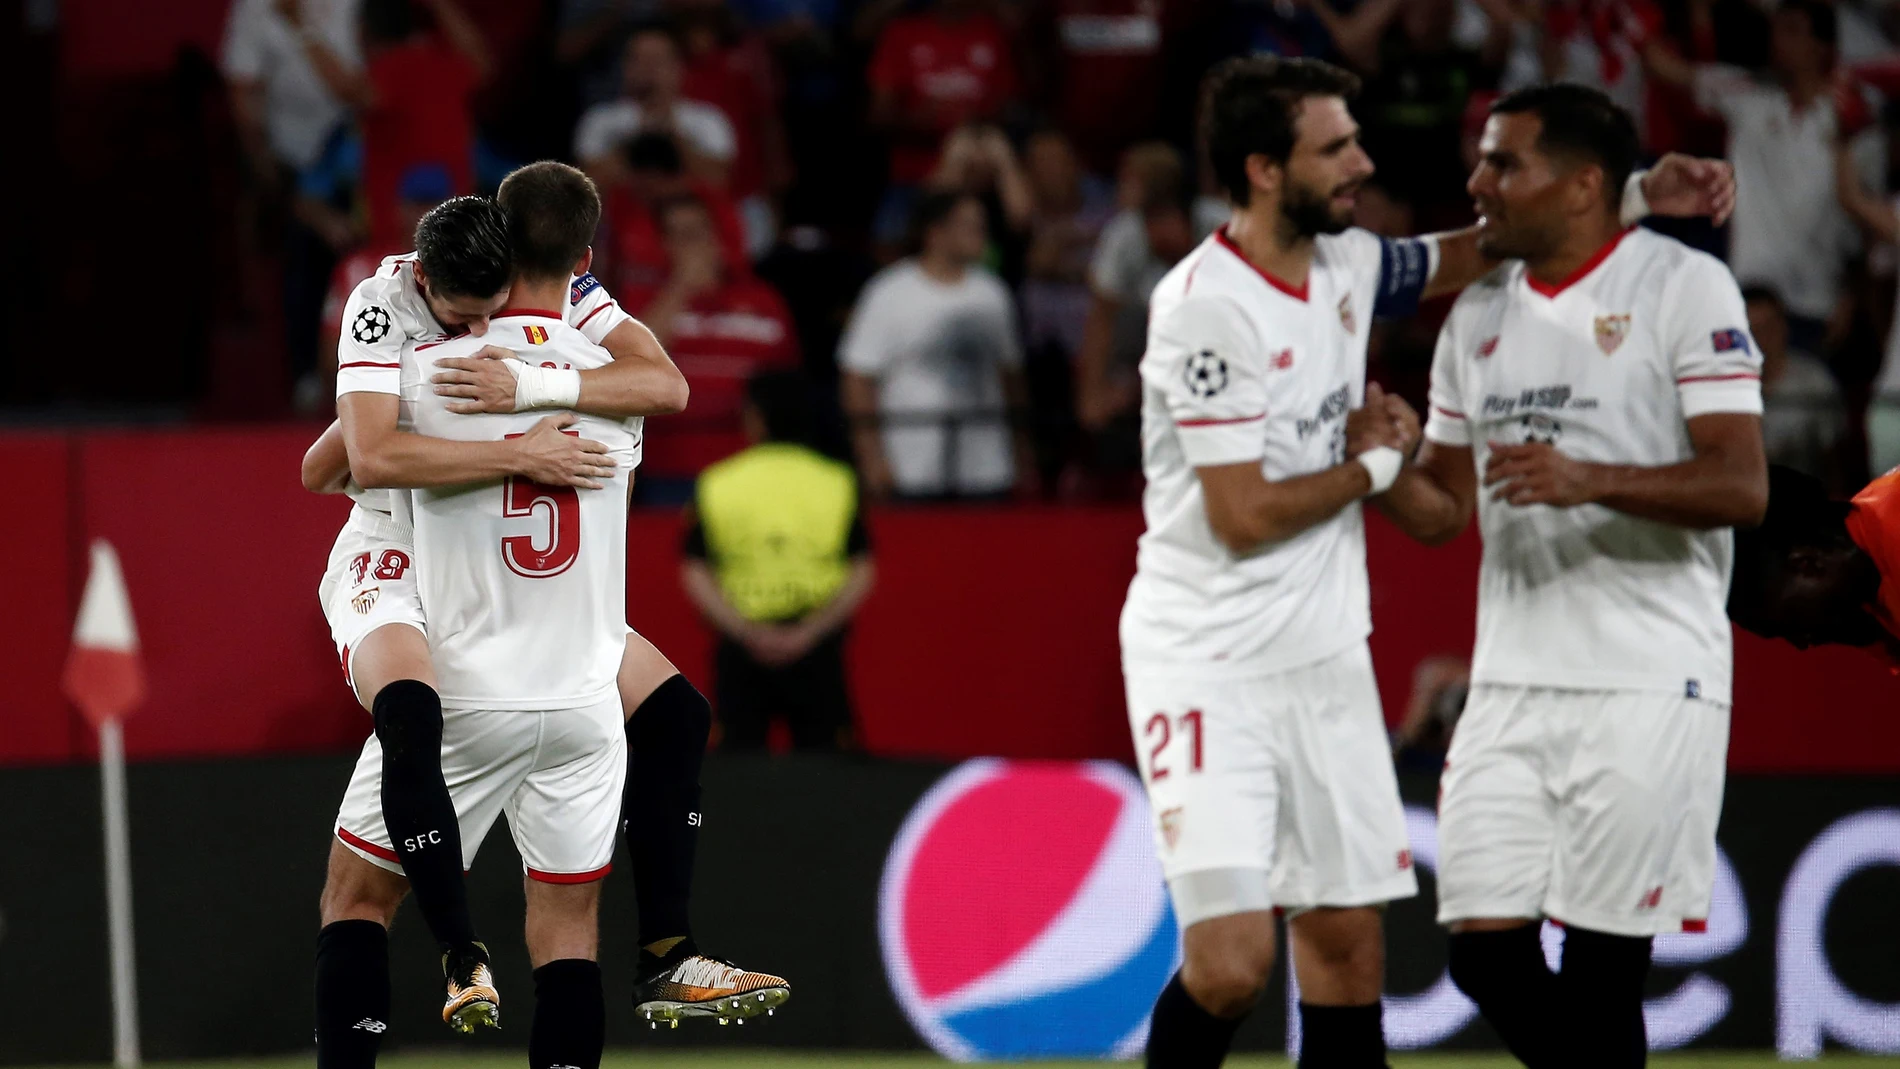 El Sevilla celebrando un gol frente al Istanbul basaksehir